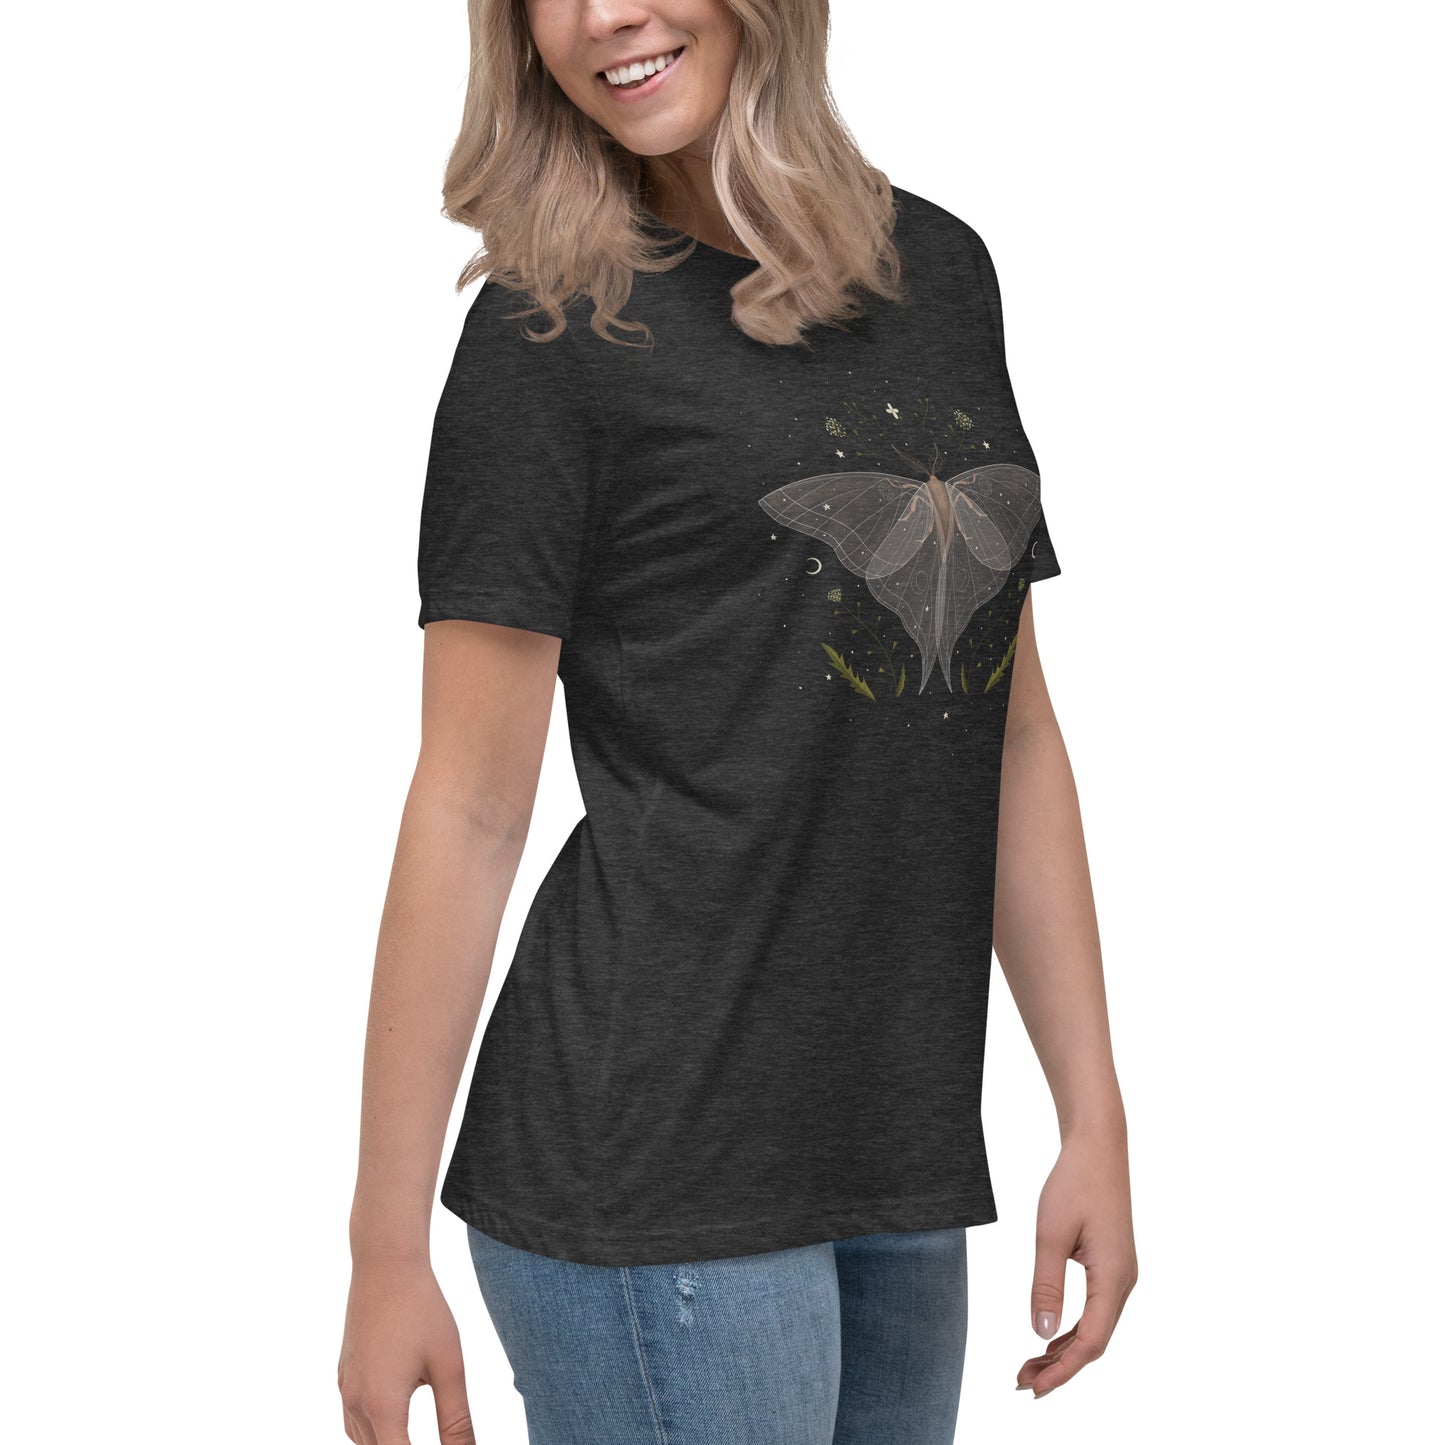 Luna Moth Women's Relaxed T-Shirt